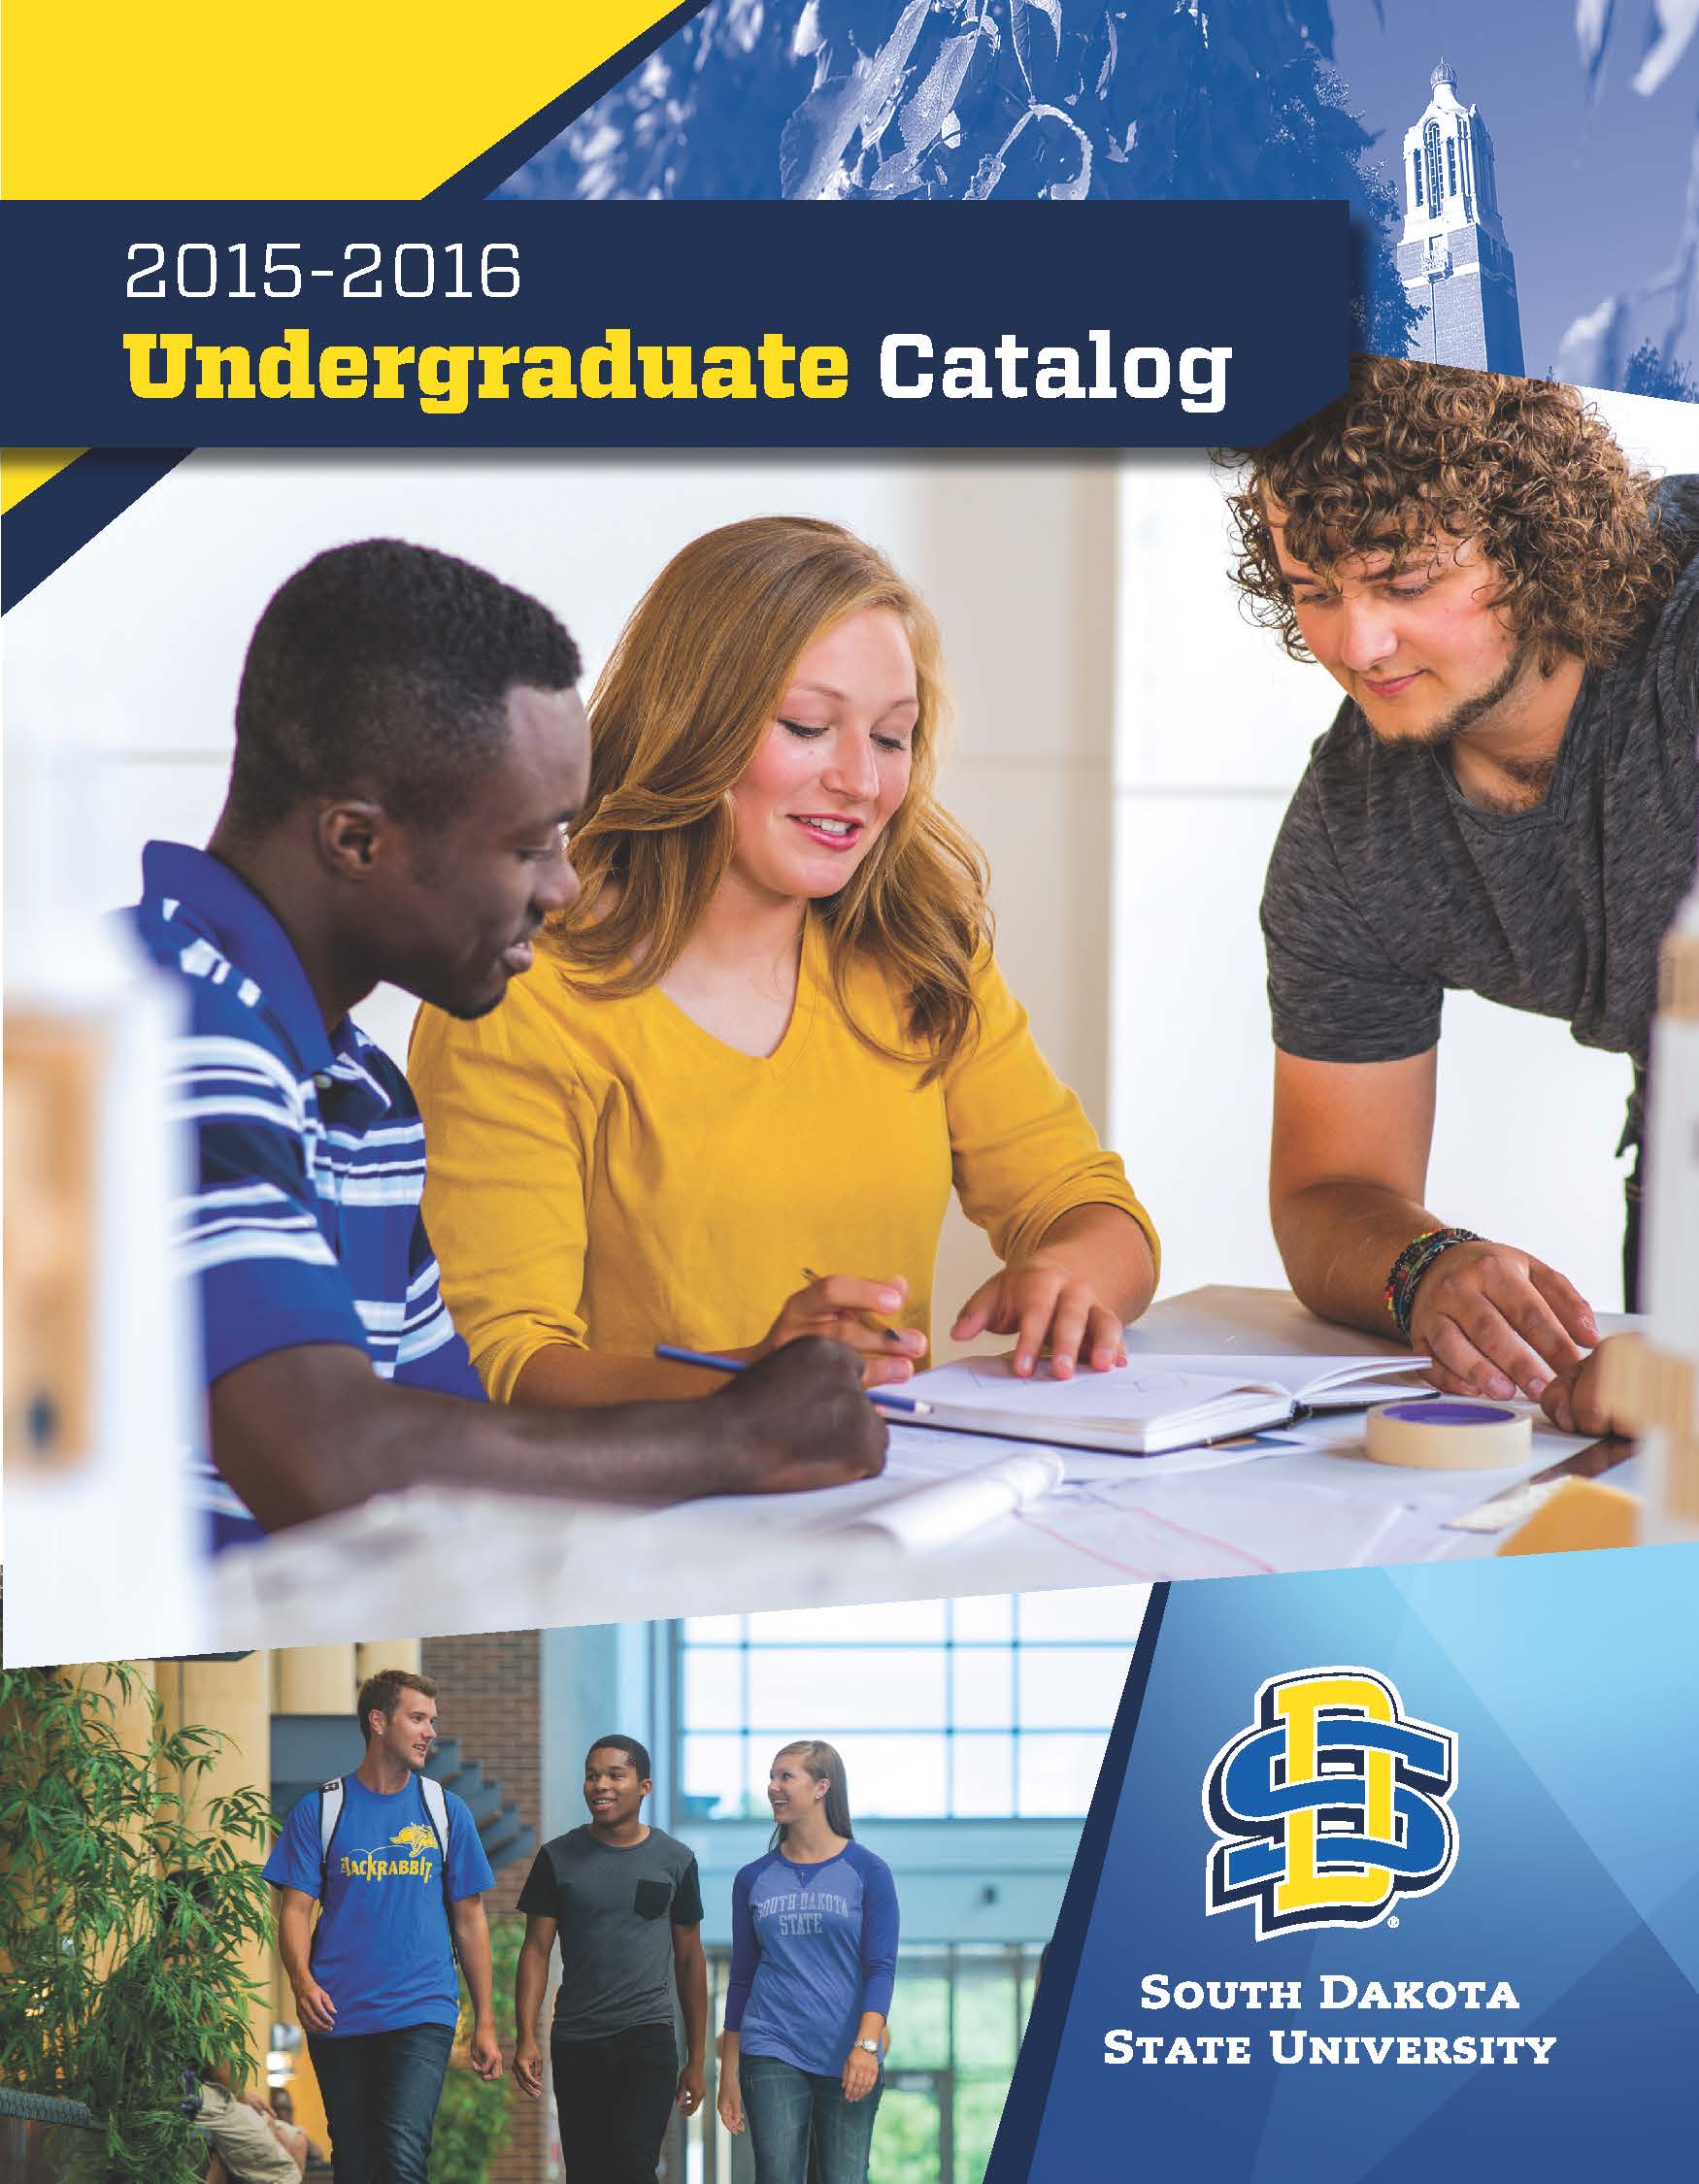 2015-2016 Undergraduate Catalog cover